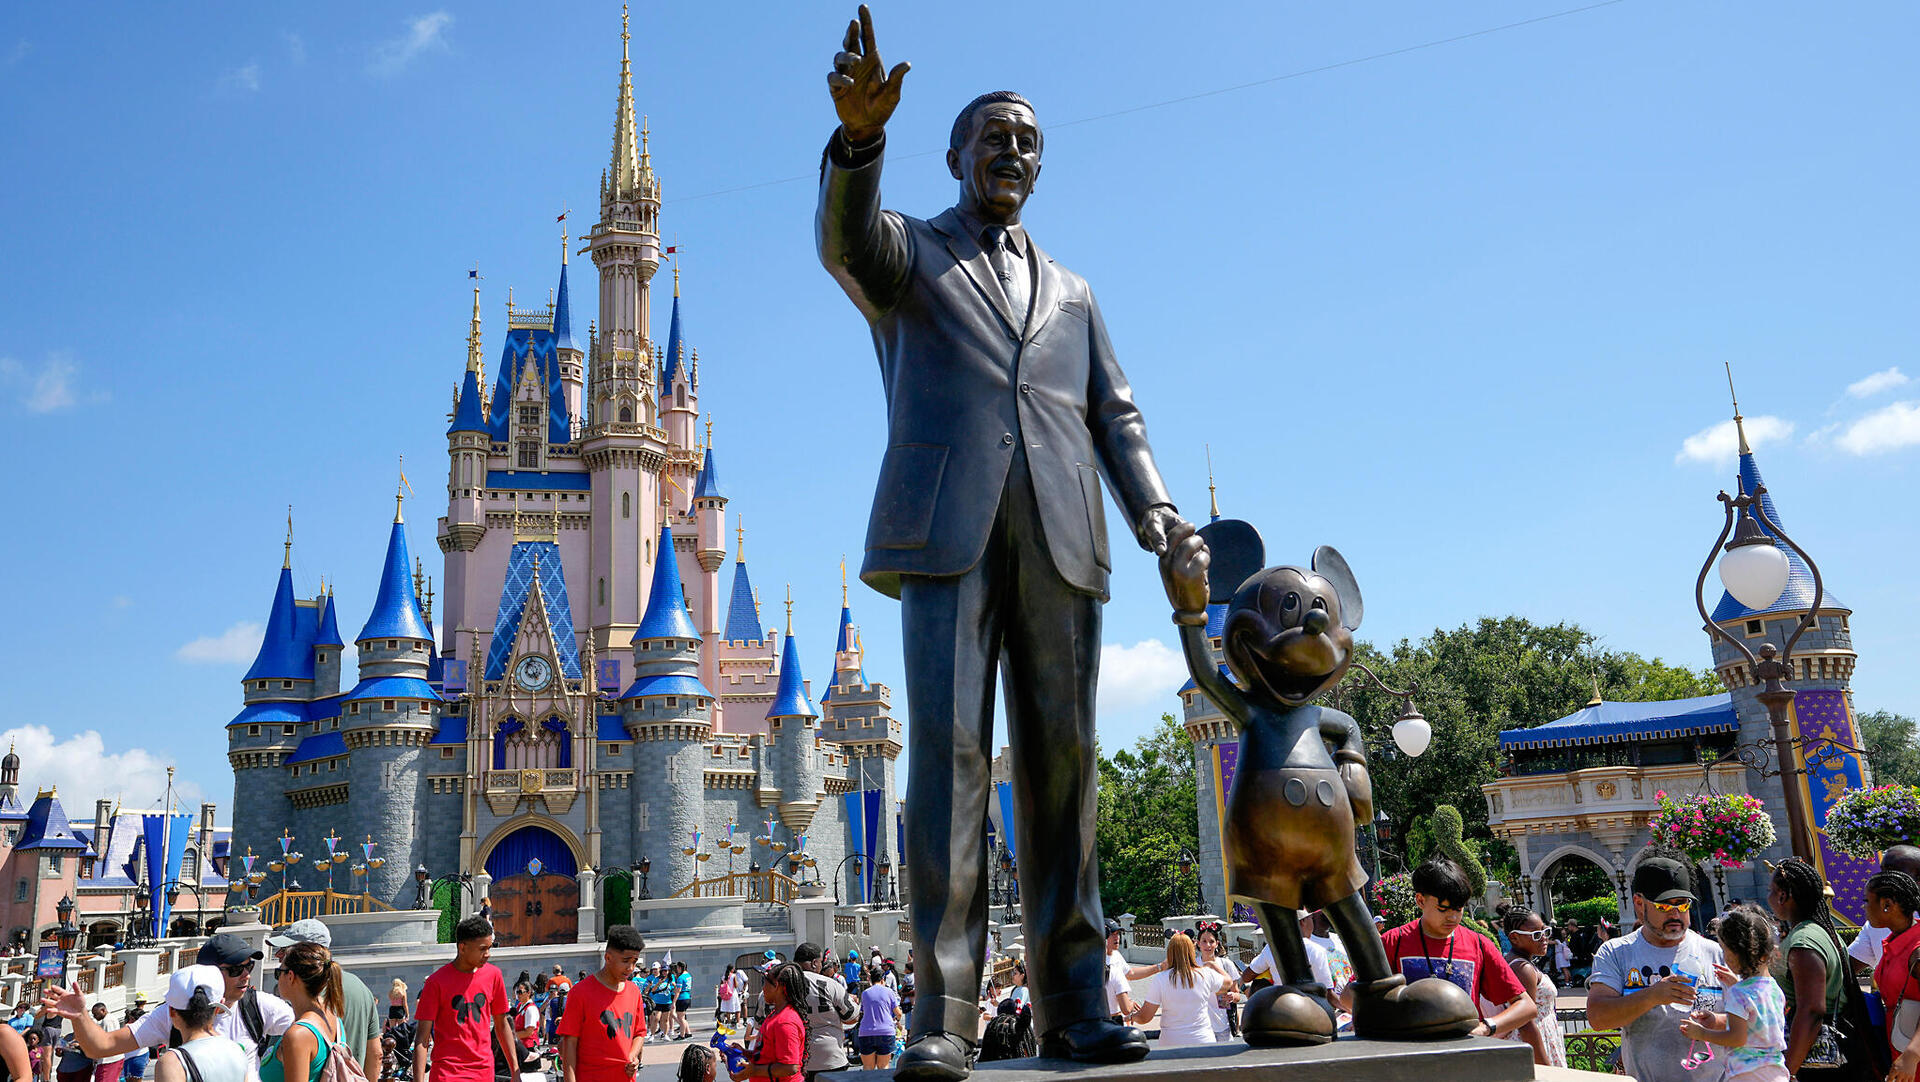 פסל של וולט דיסני ומיקי מאוס בממלכת הקסם פארק וולט דיסני וורלד בלייק בואנה ויסטה, פלורידה